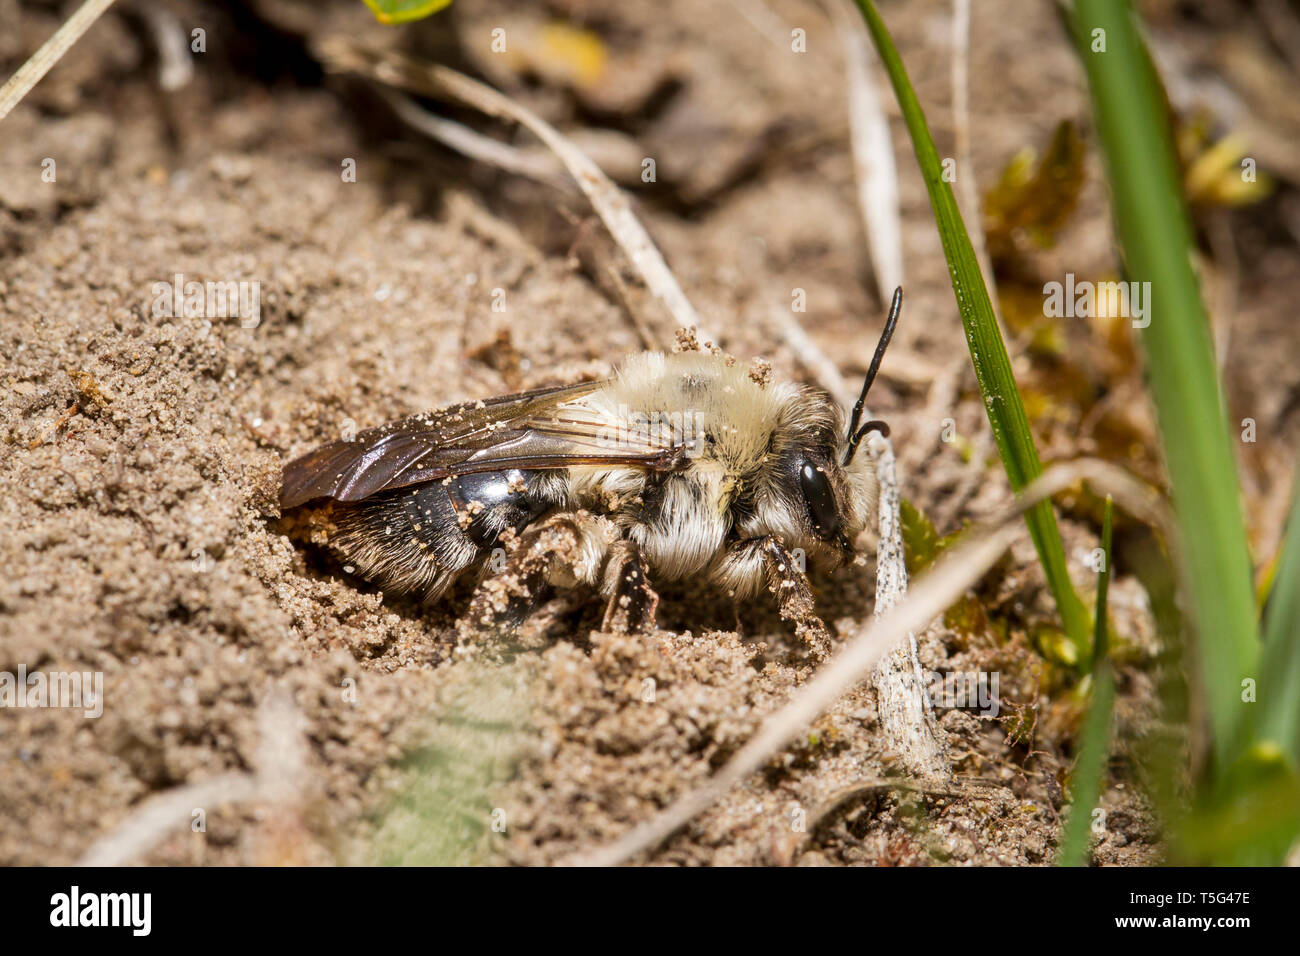 Auensandbiene, Andrena vaga, grey-backed mining bee Stock Photo